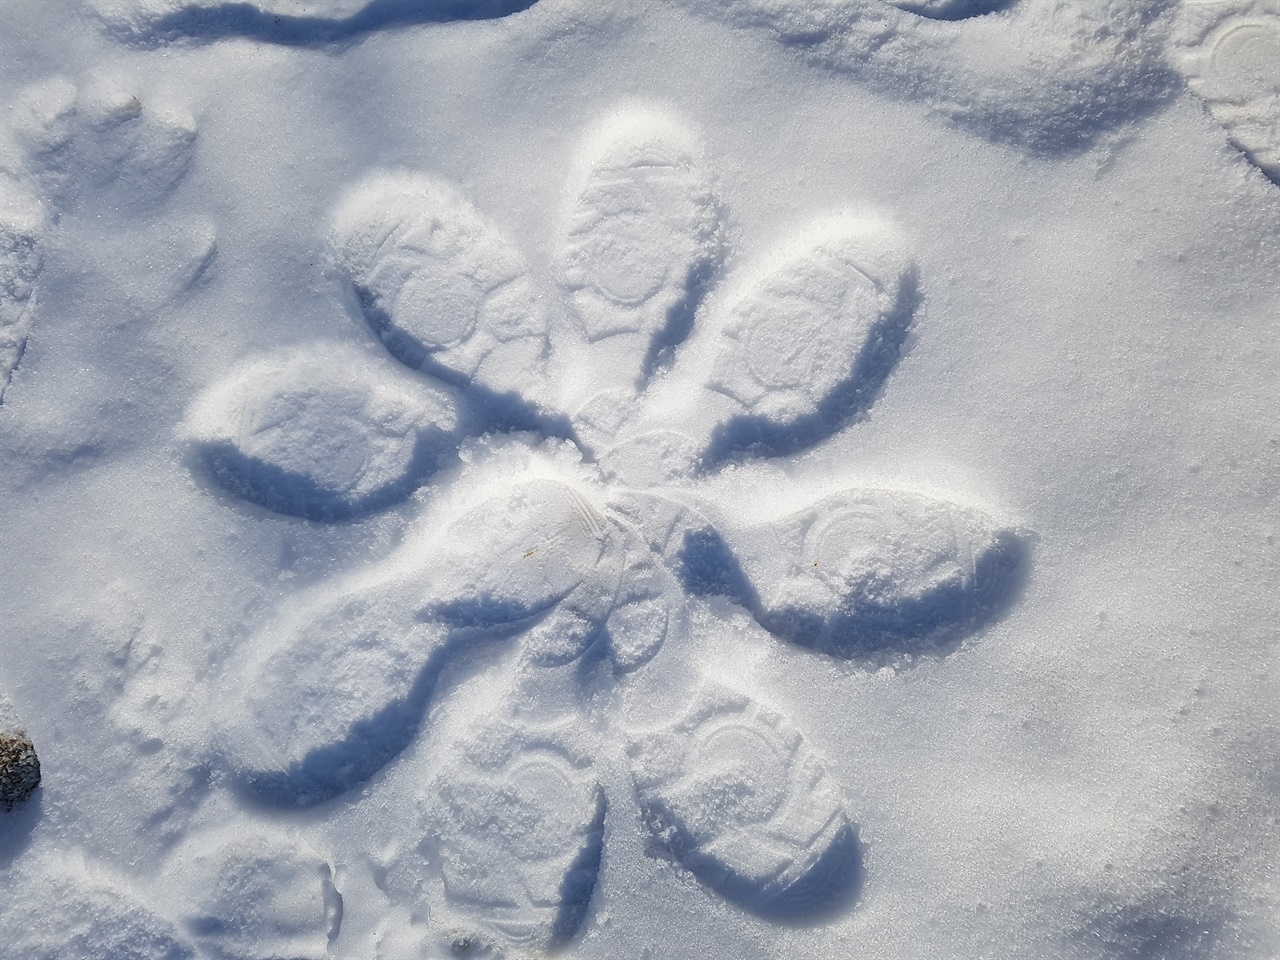 발자국으로 찍은 눈꽃 걷기를 하면서 녹지 않은 운동장 눈위에 발자국으로 눈꽃을 만들었다.